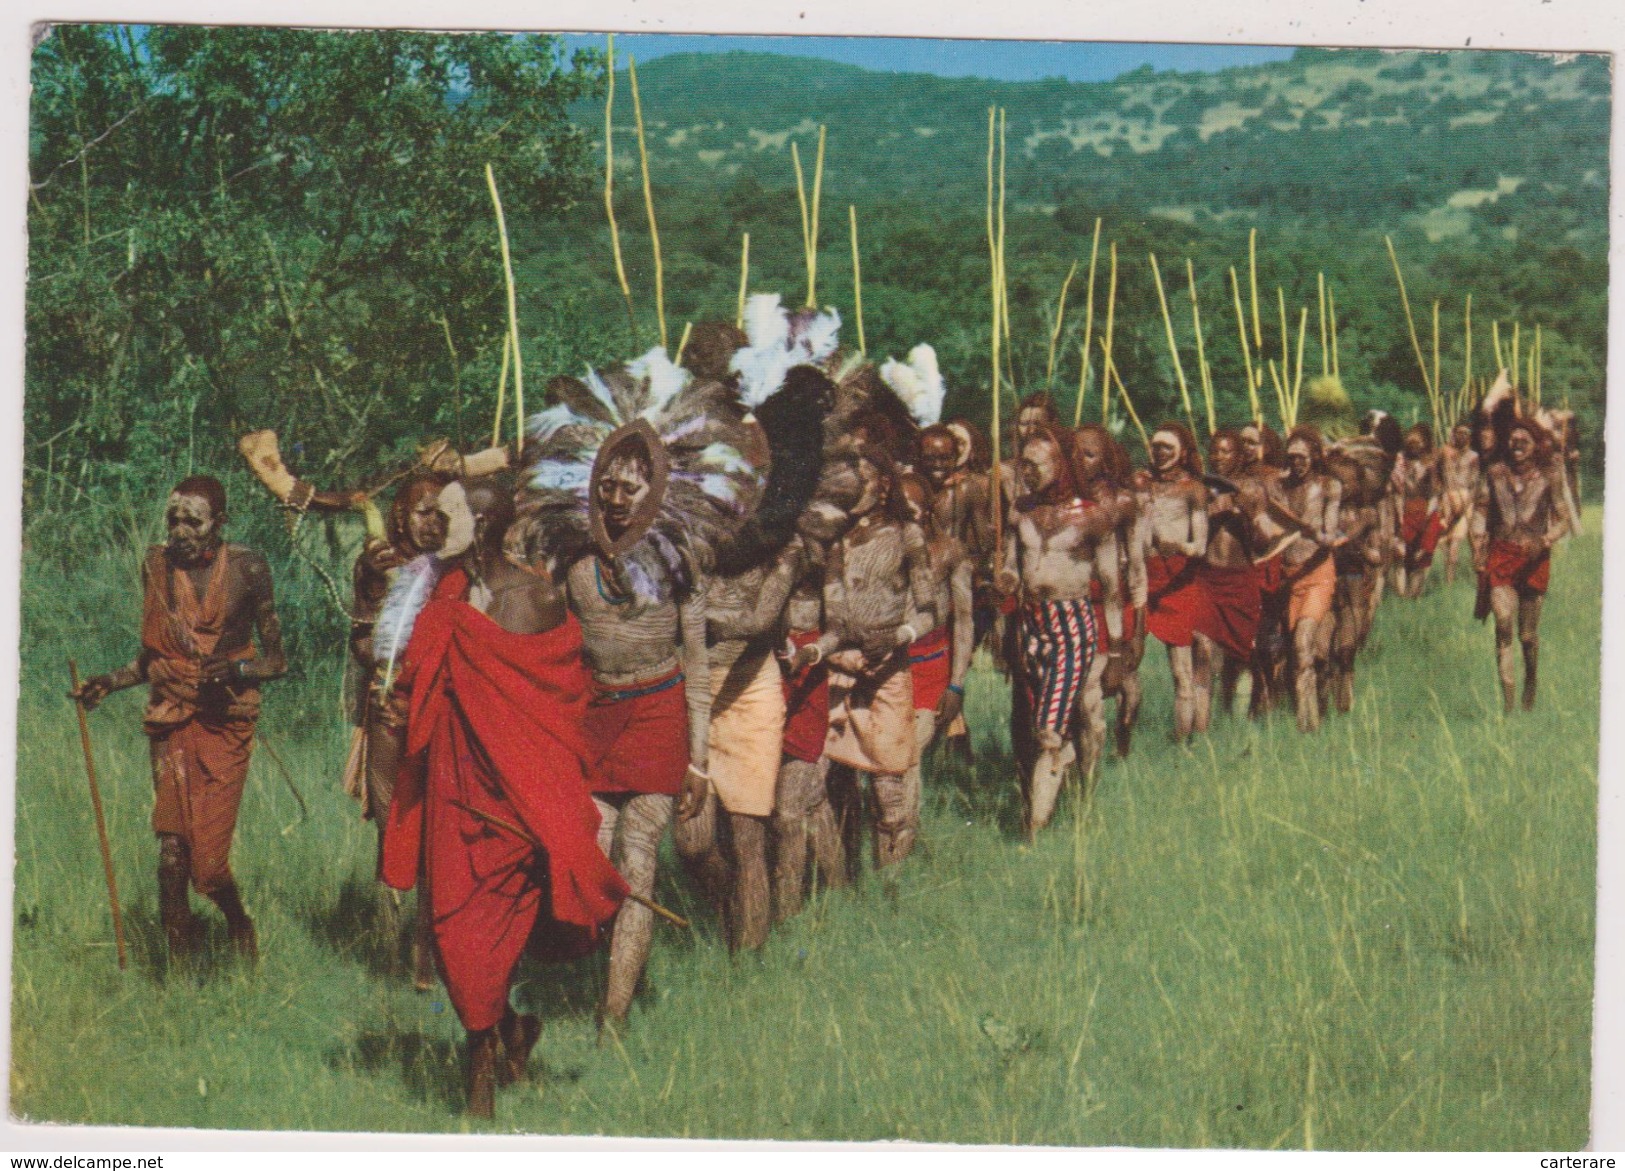 KENYA,afrique Est,prés Du Soudan,ethiopie,ouganda,tanzanie,TRIBU MASAI,DANCE DES SORCIERS - Kenya